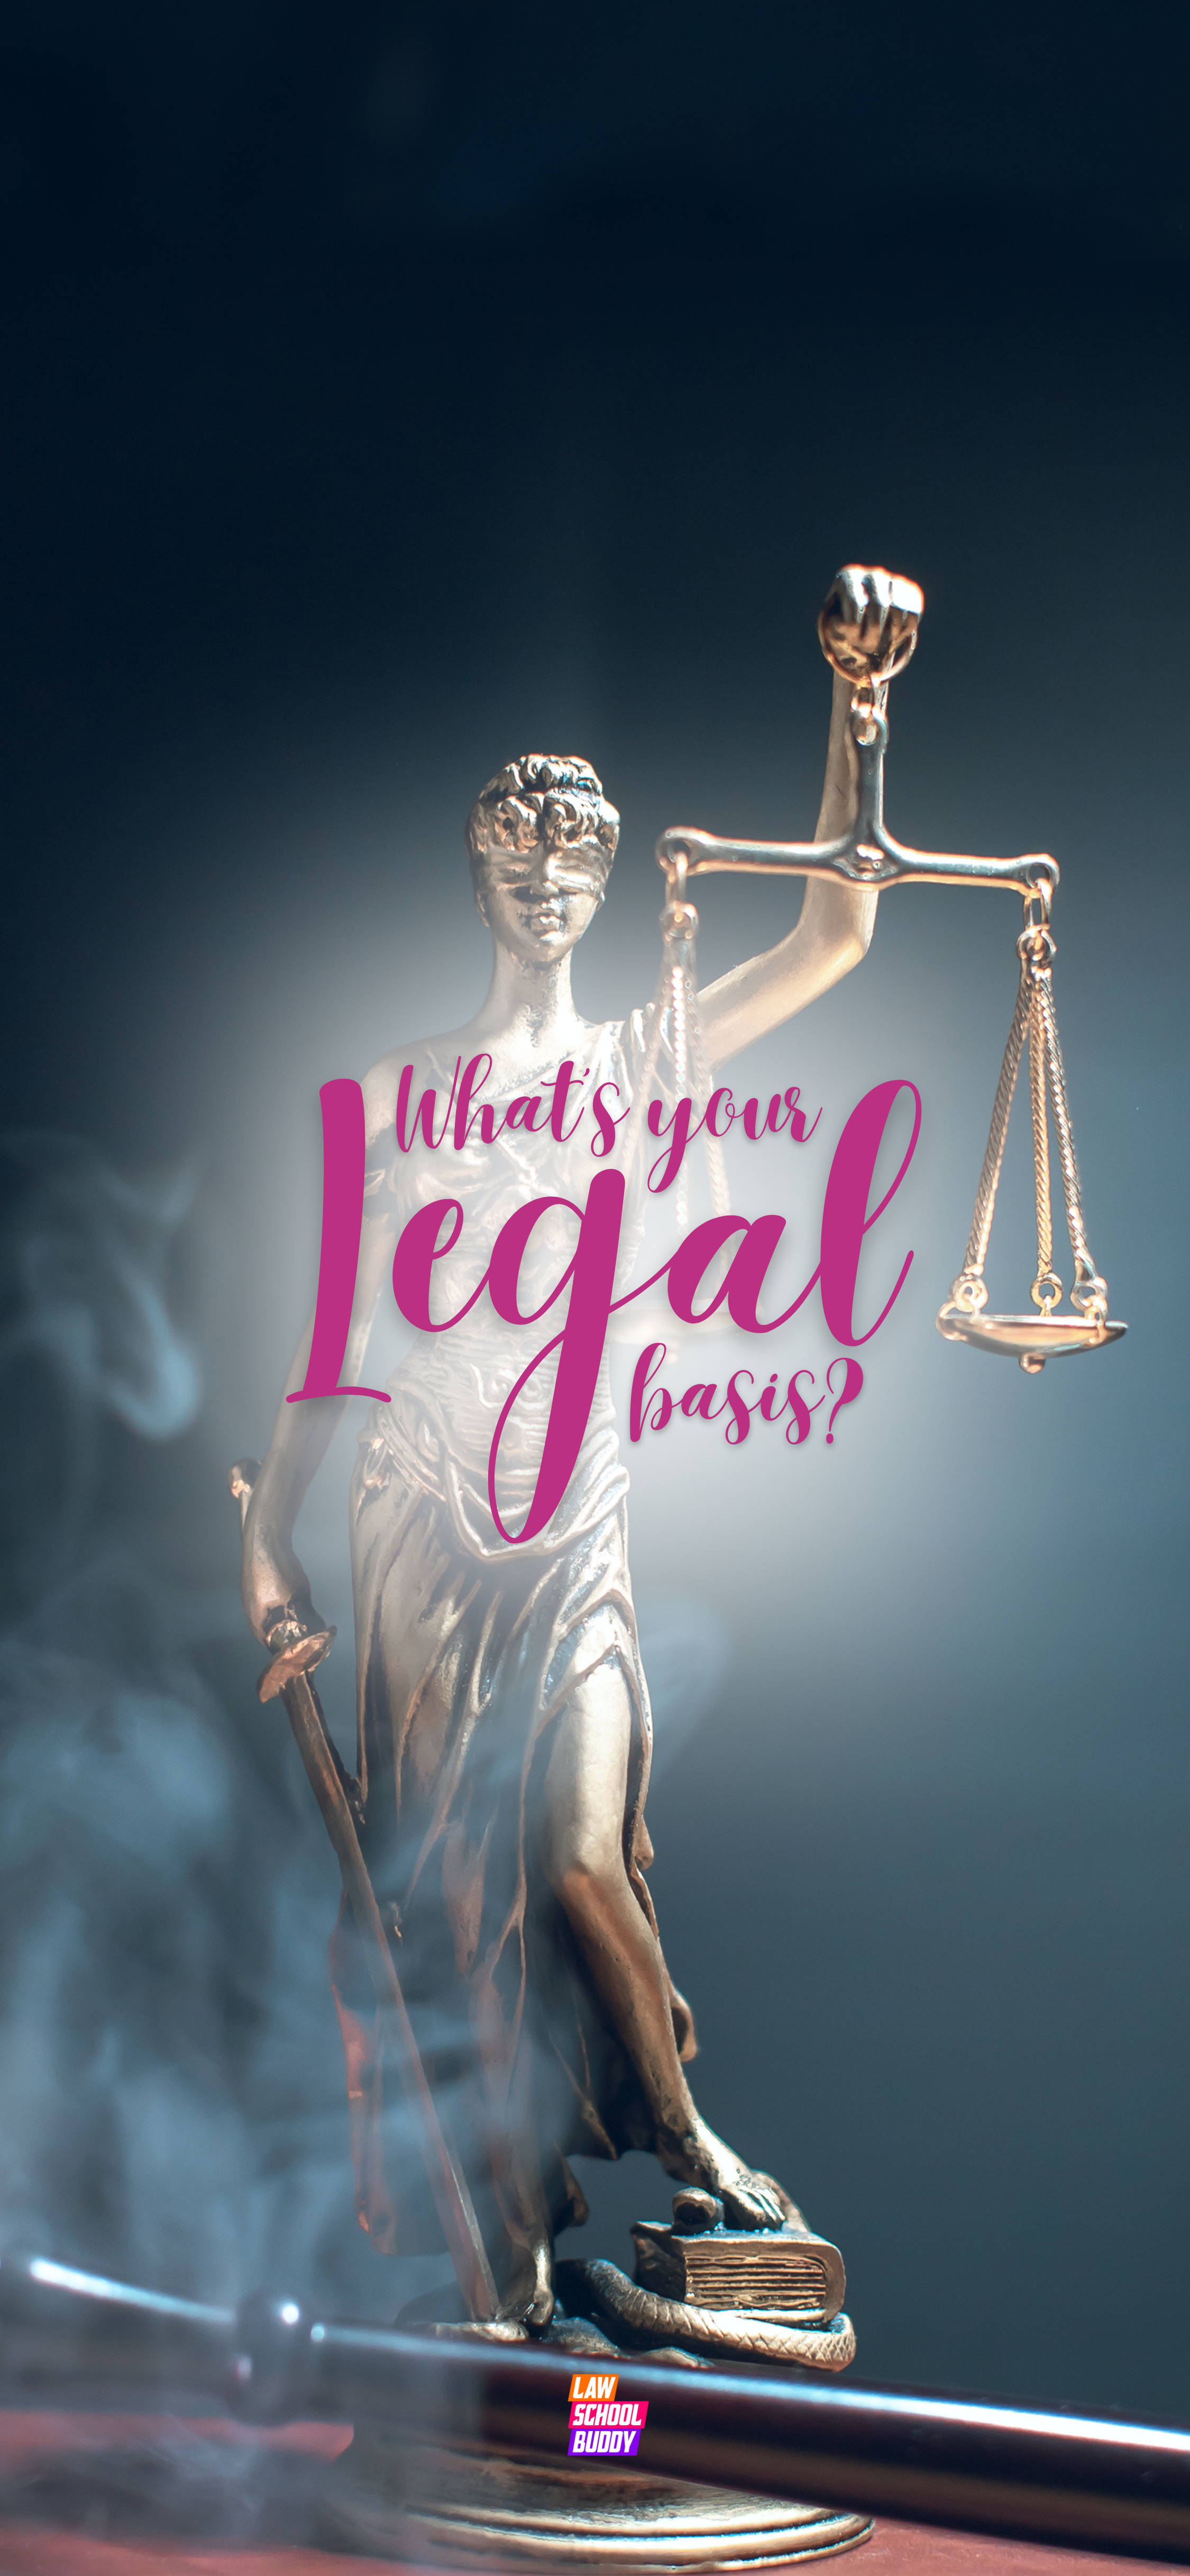 Hvilken er din juridiske baggrundadvokat? Wallpaper